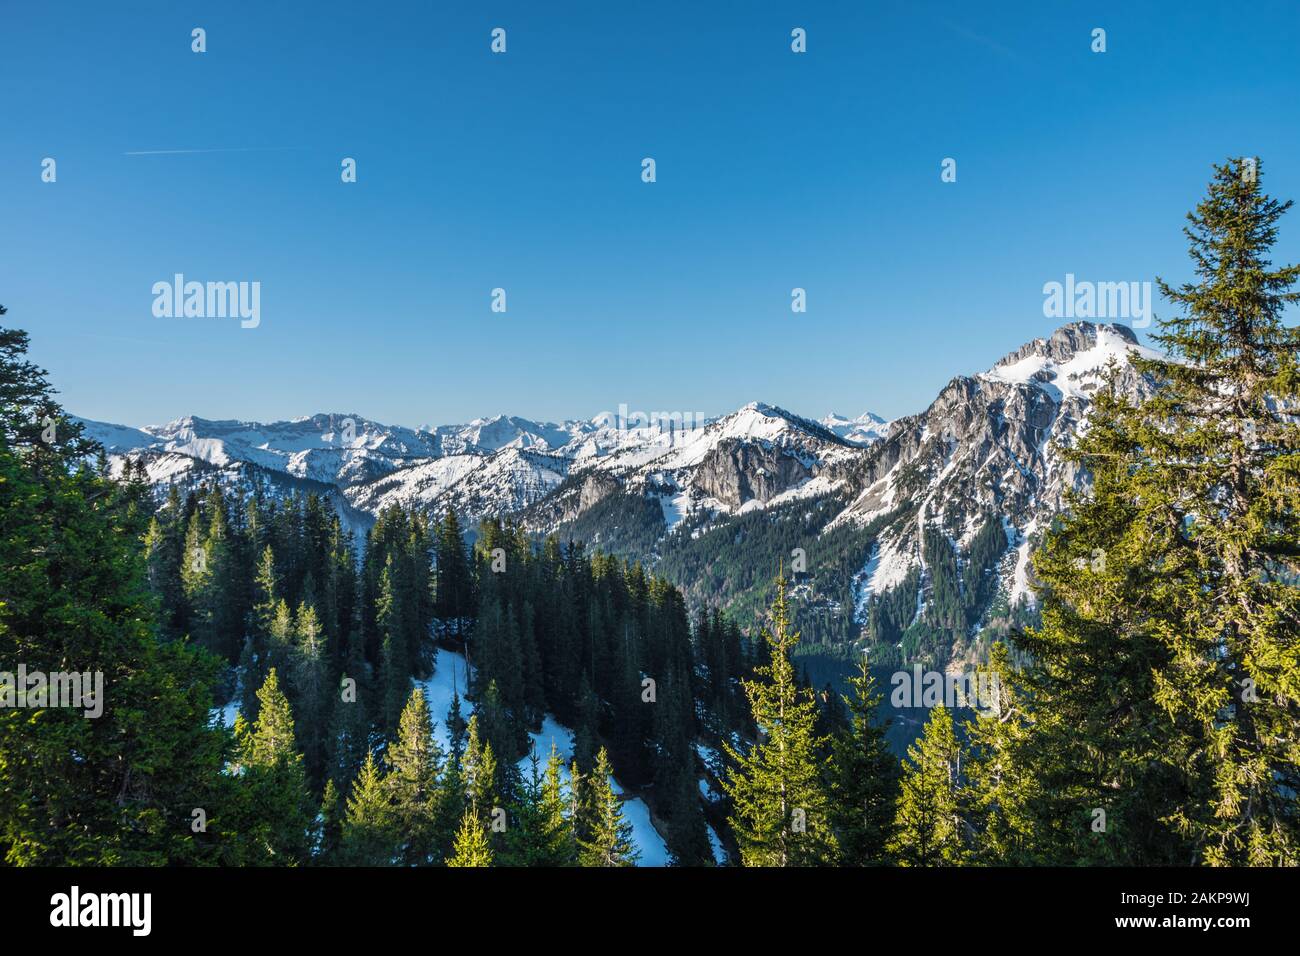 Belle vue sur les montagnes avec neige et arbres Banque D'Images